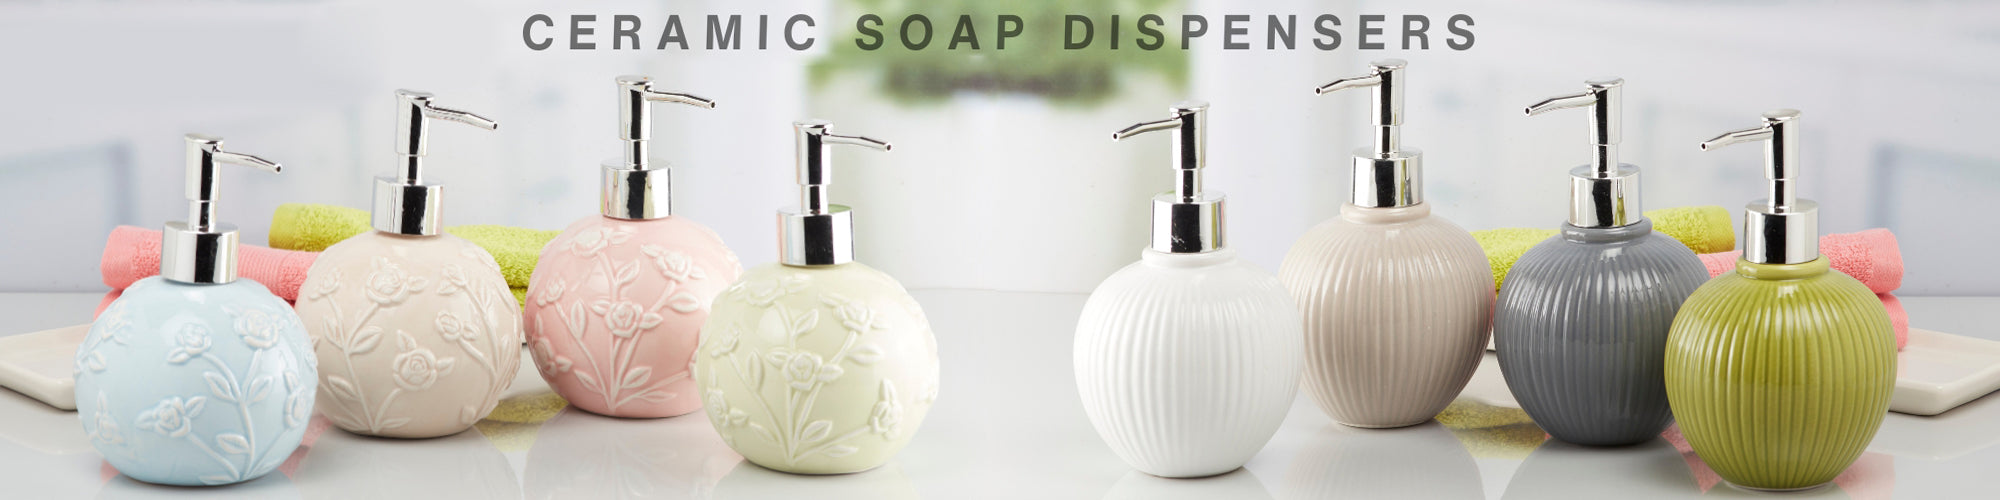 Dispenser - Buy Bathroom Soap Dispenser Online